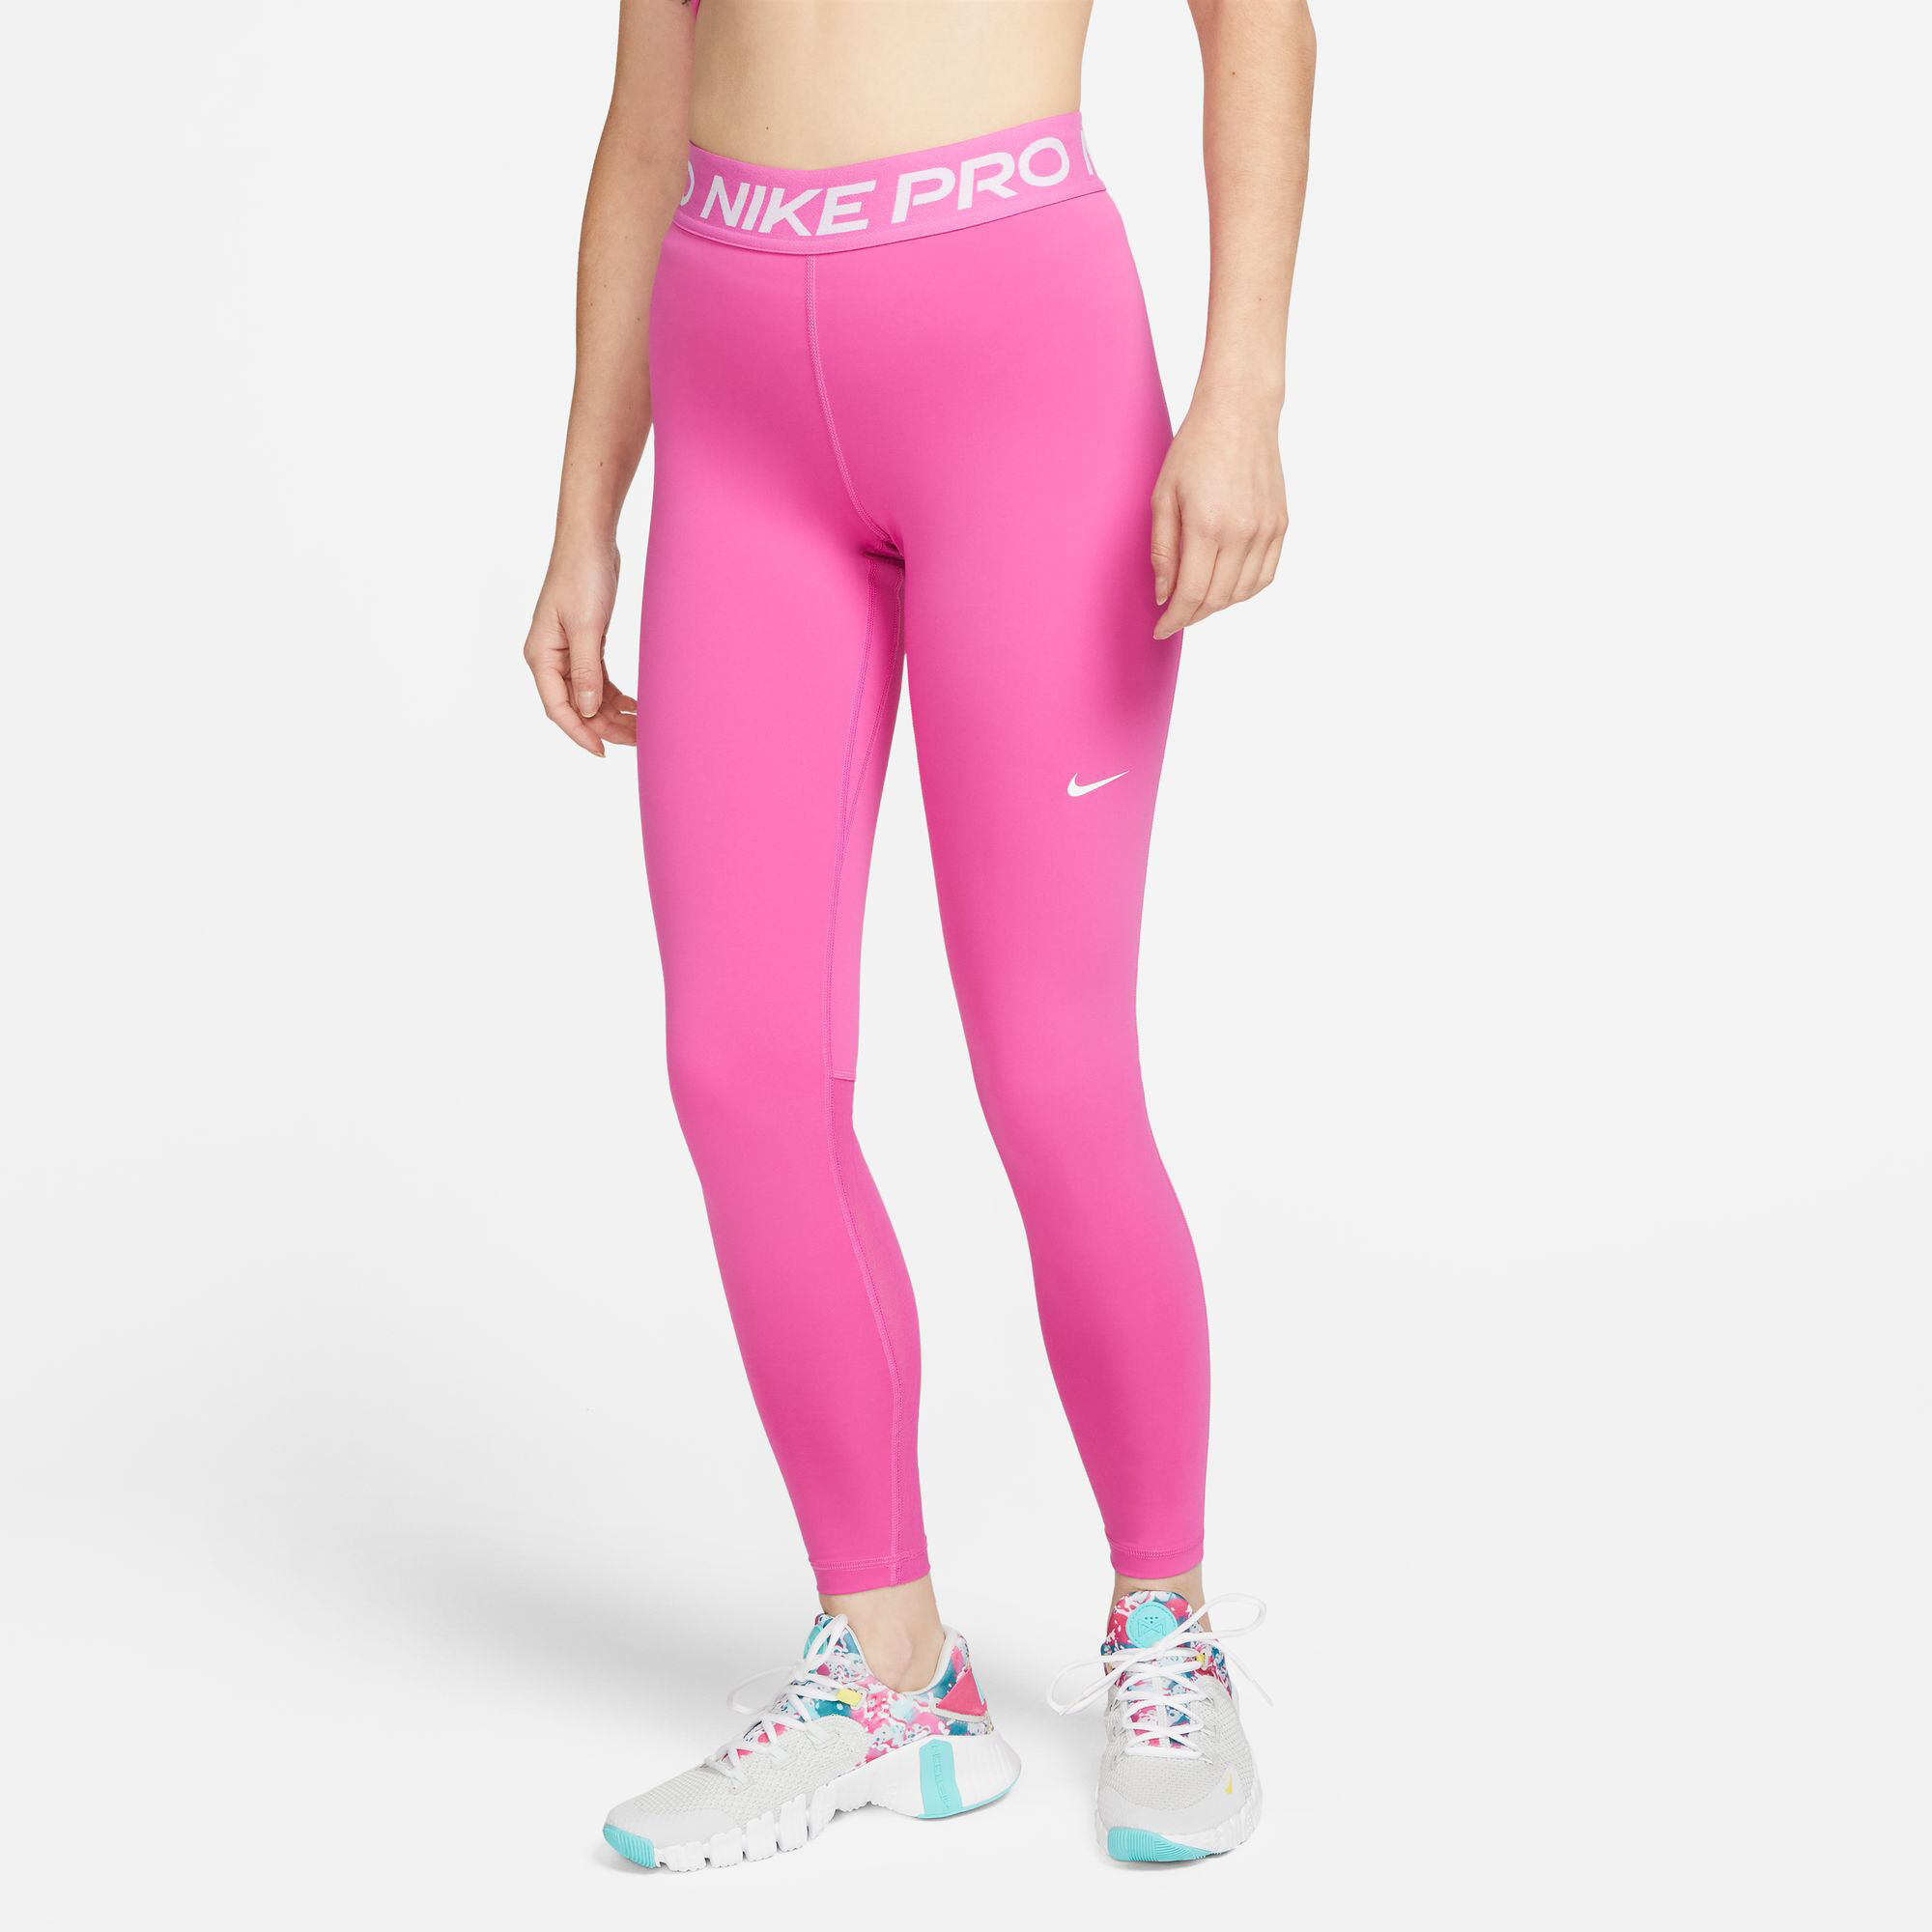 Ørken udtrykkeligt angivet Nike Performance 365 Stramme Løbebukser Damer - Pink, Hvid køb online |  Tennis-Point